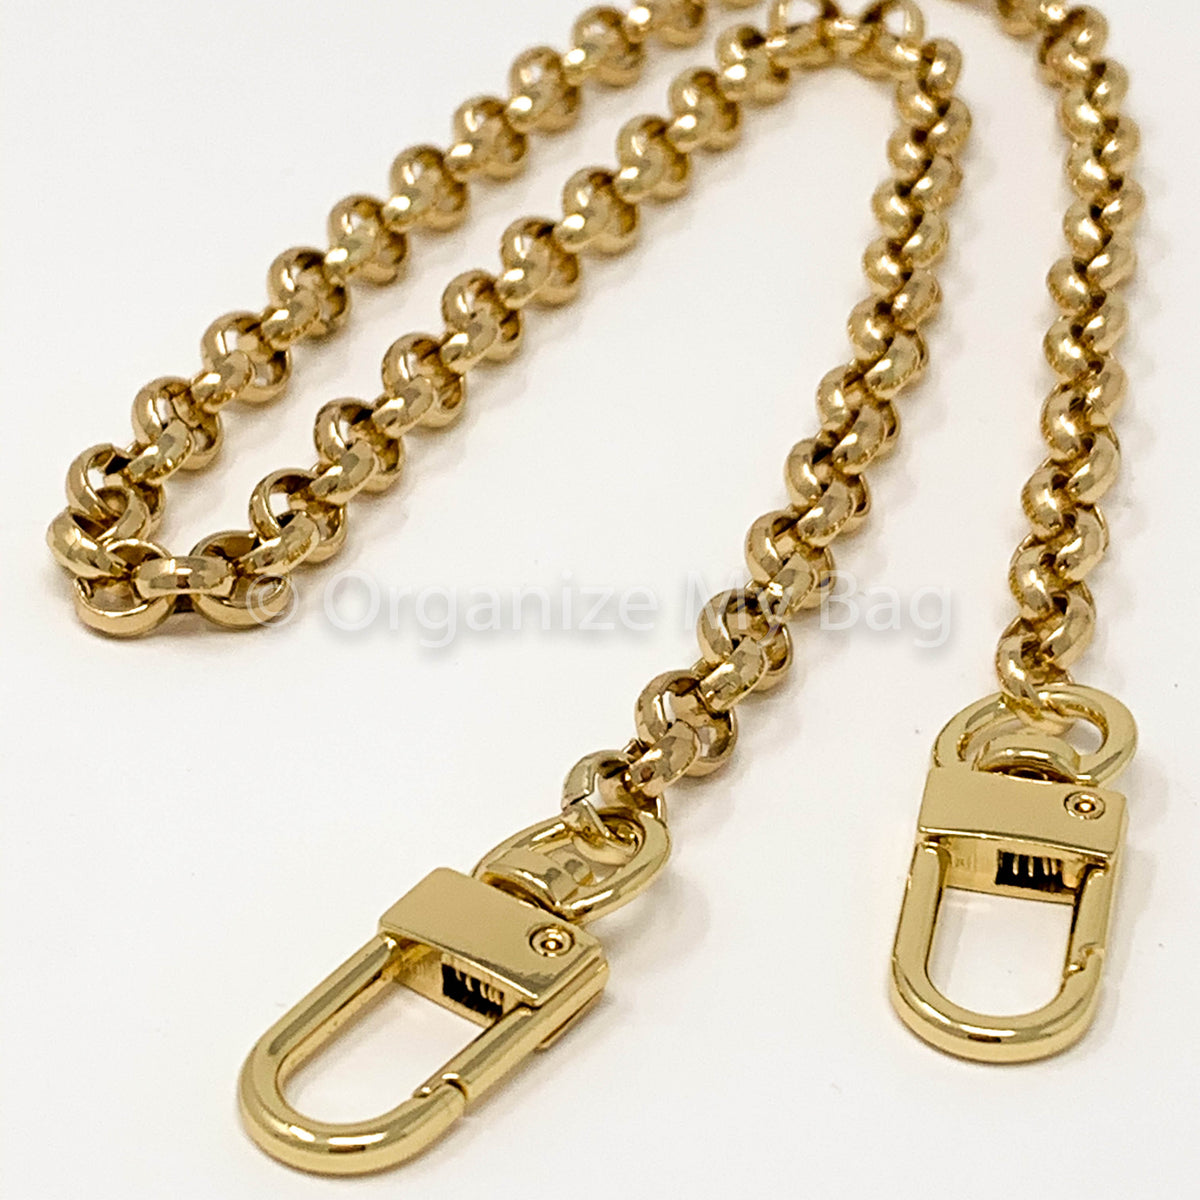 Louis Vuitton Chain Link Bag